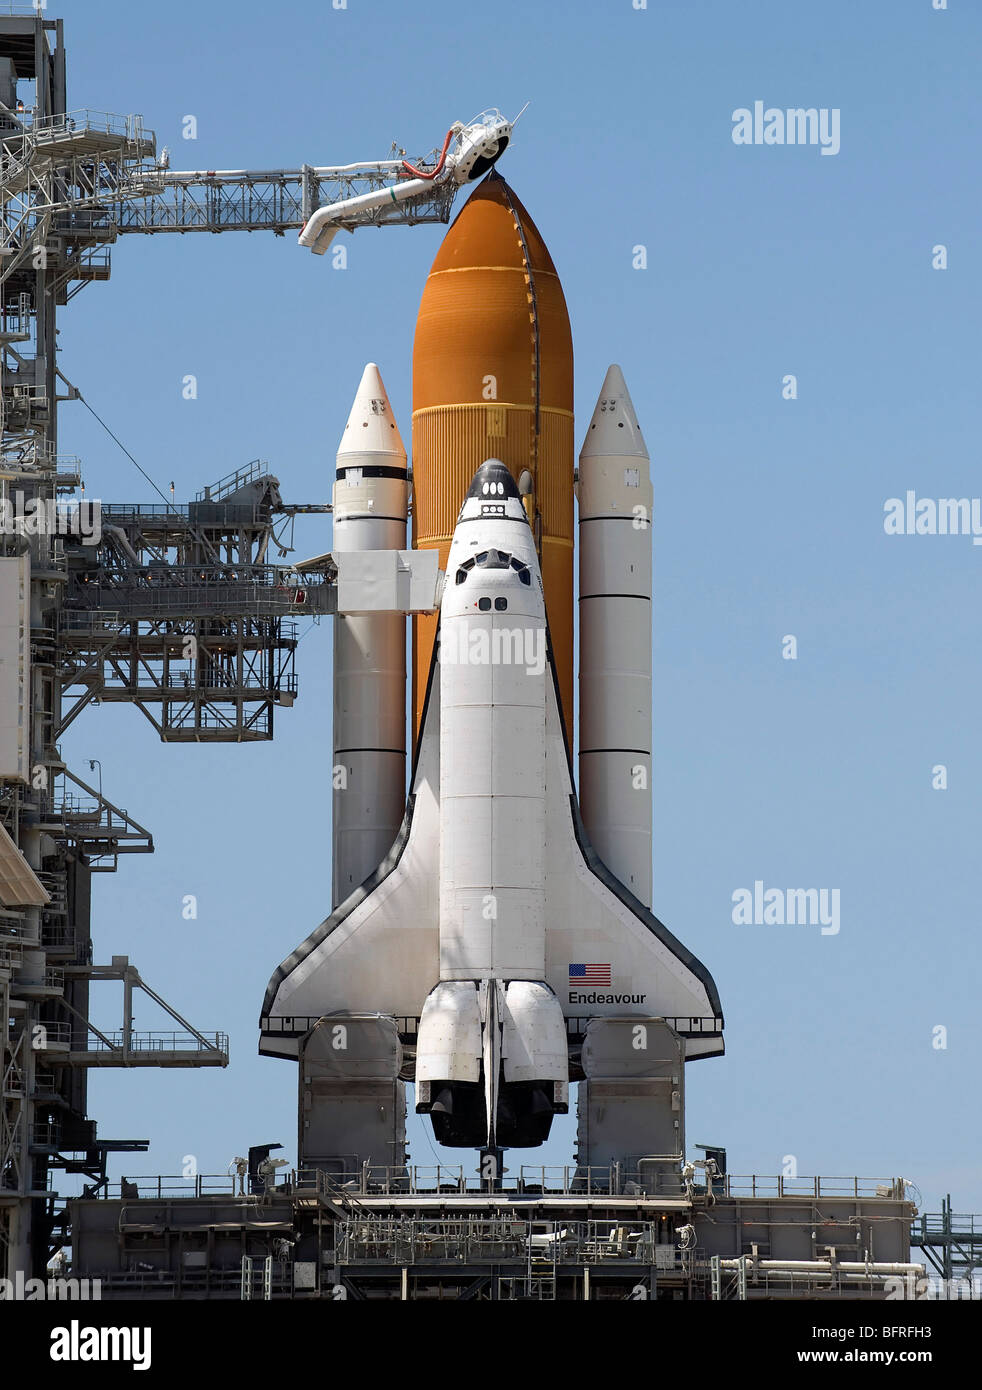 11 luglio 2009 - Lo Space Shuttle Endeavour è visto a launch pad 39A in corrispondenza di NASA Kennedy Space Center di Cape Canaveral, in Florida. Foto Stock